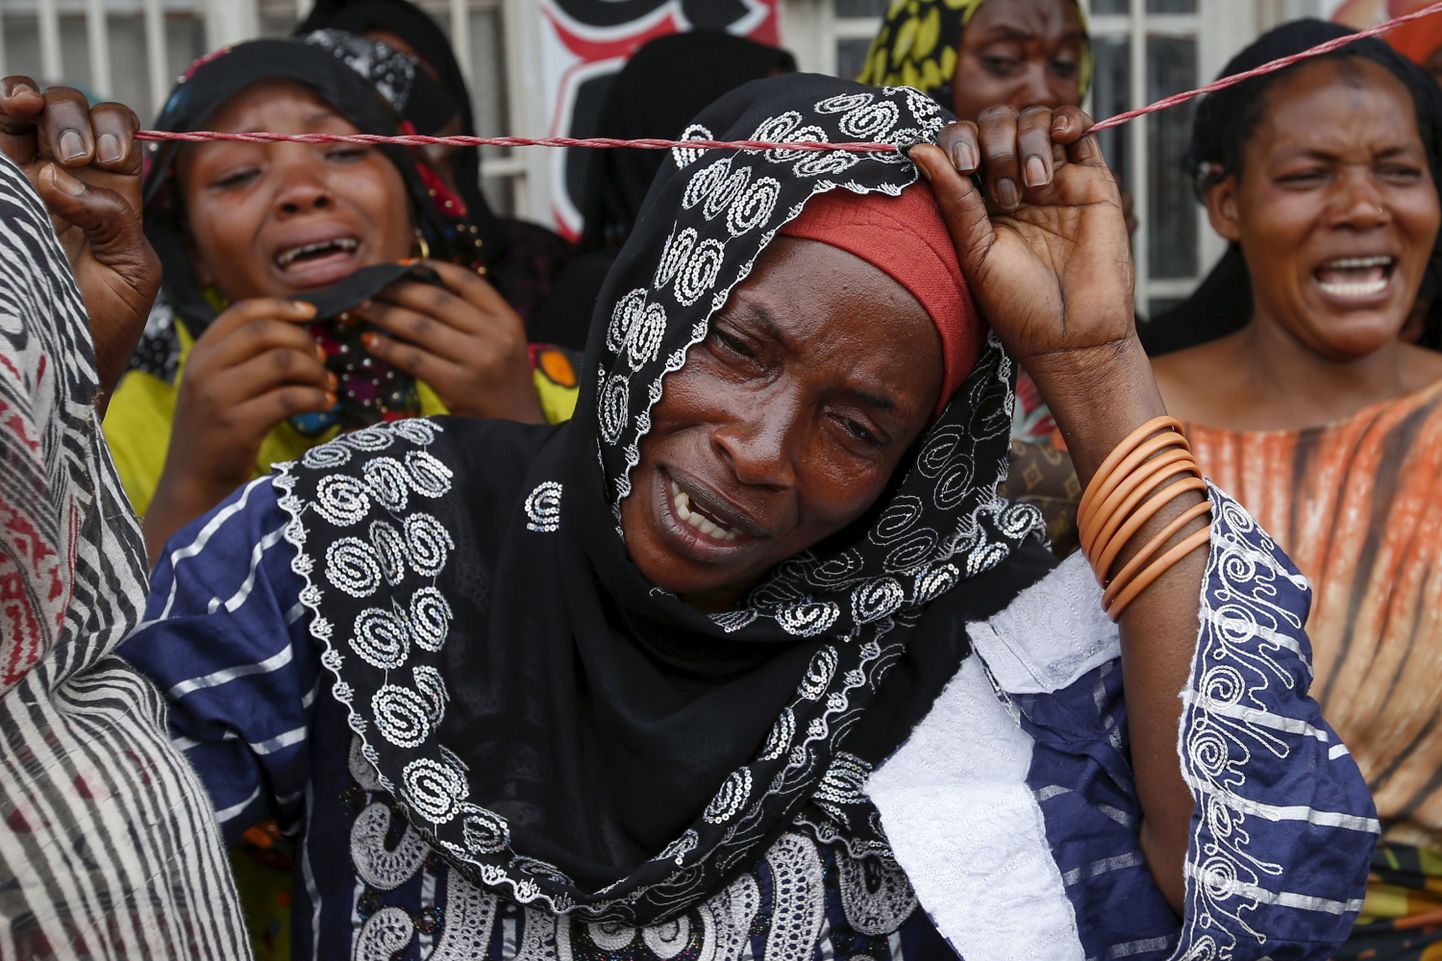 Burundi naised opositsioonipoliitiku Zedi Feruzi matustel.